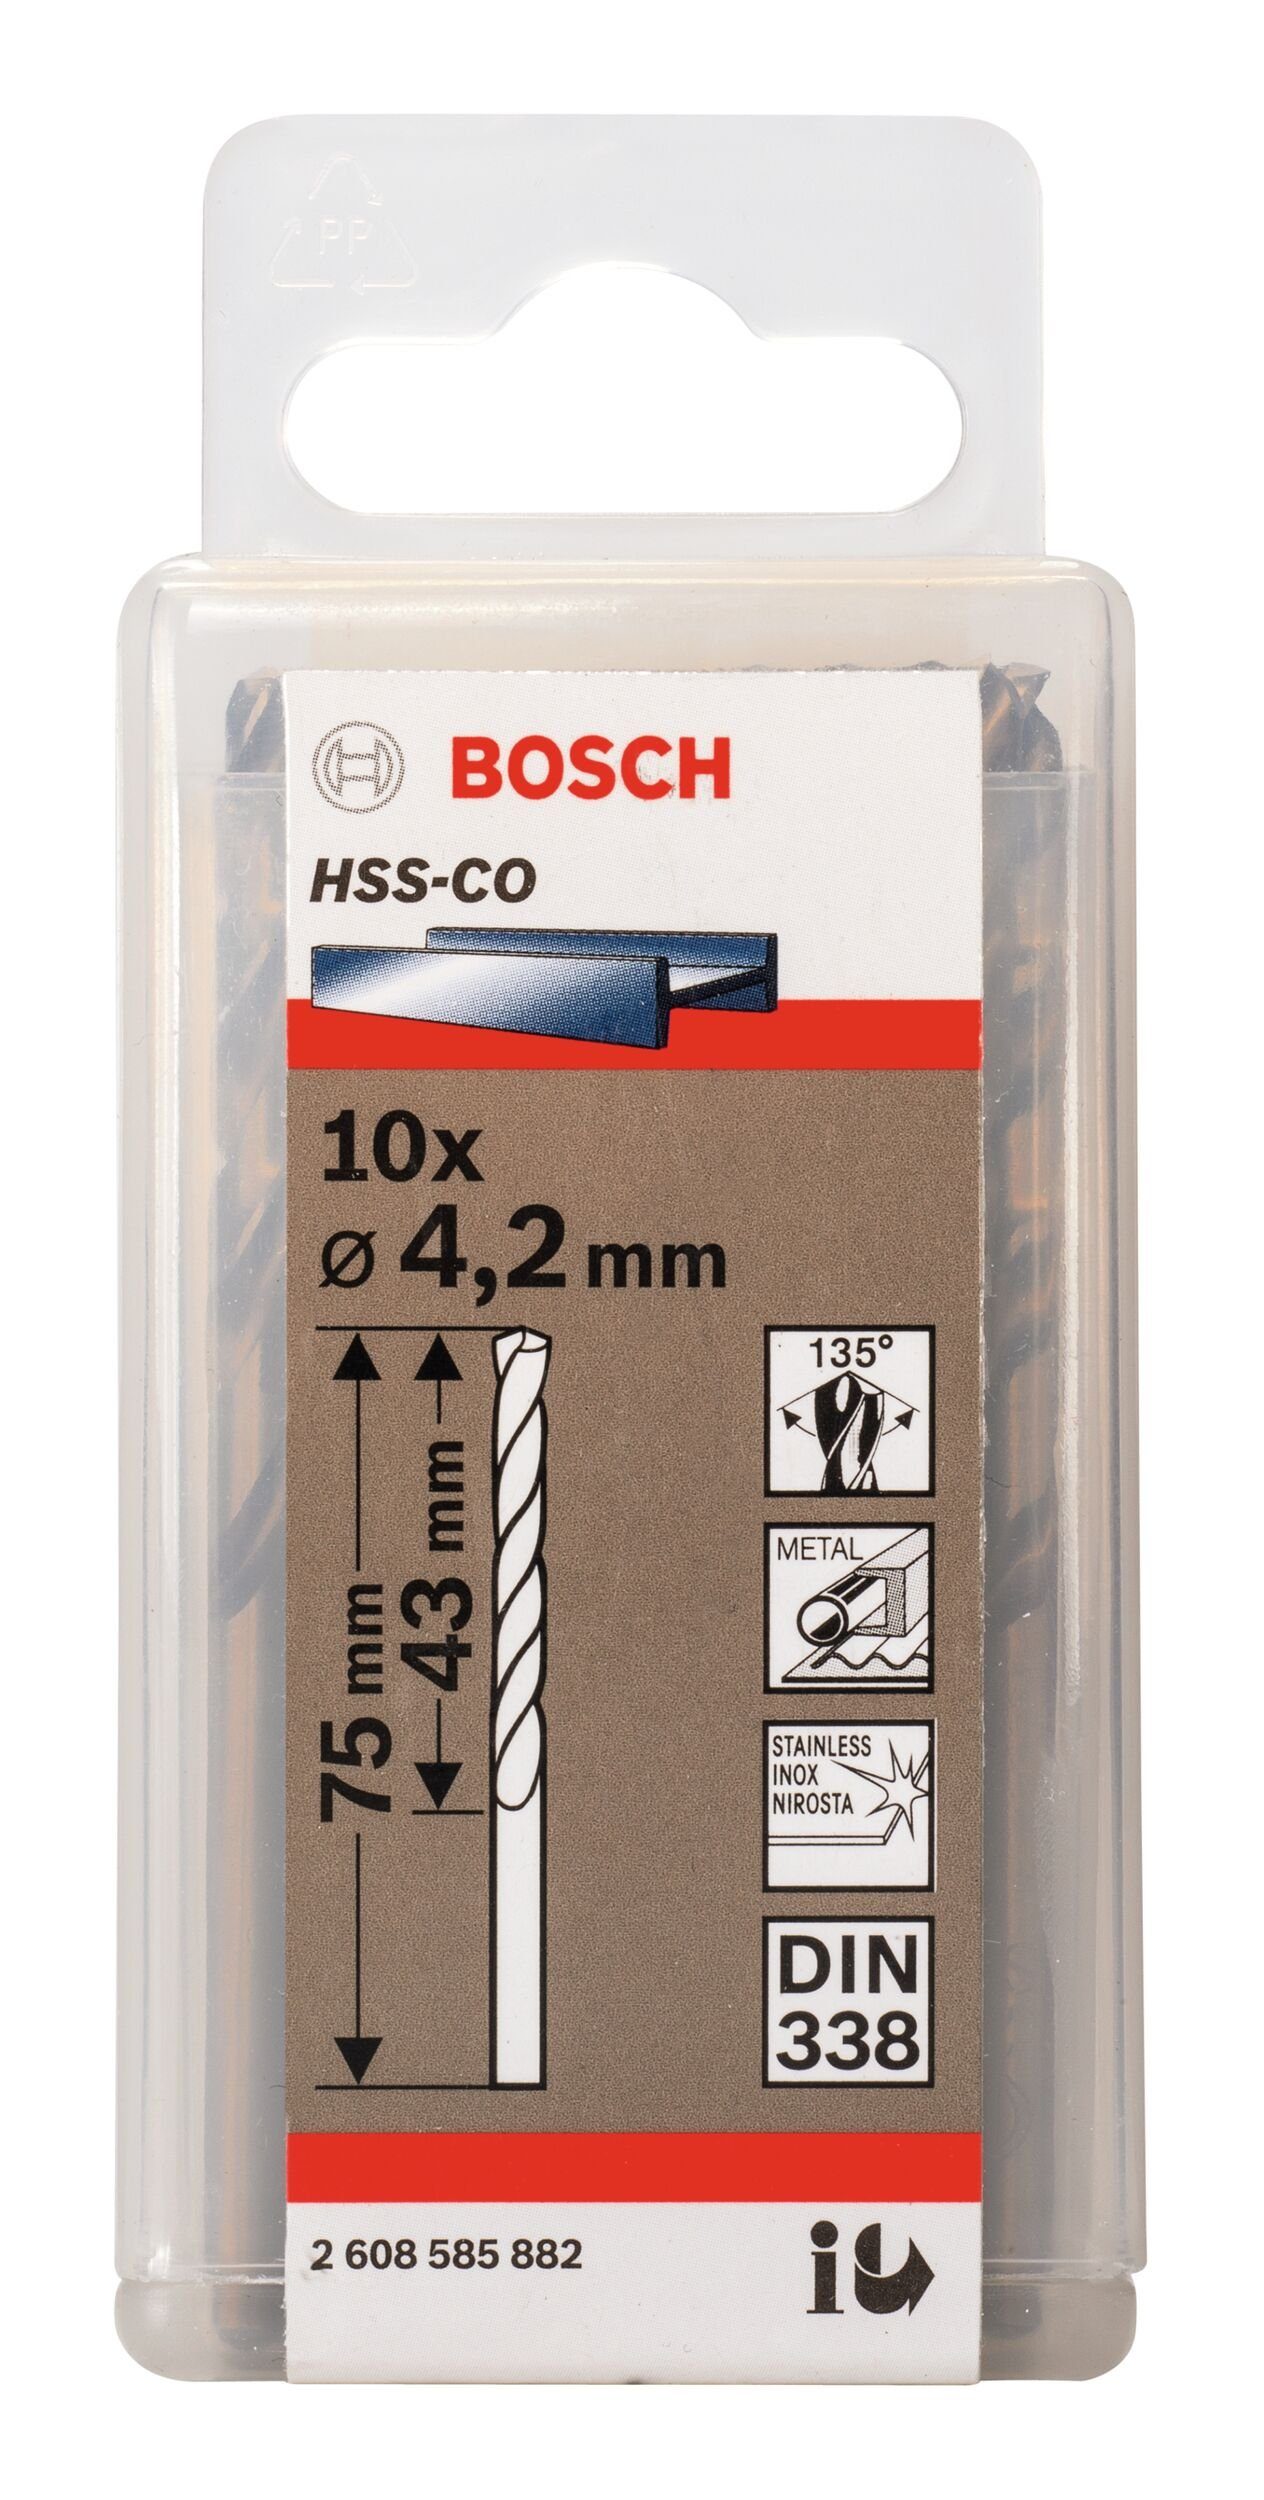 BOSCH Metallbohrer, (10 Stück), HSS-Co mm (DIN 43 x 75 4,2 338) x - 10er-Pack 